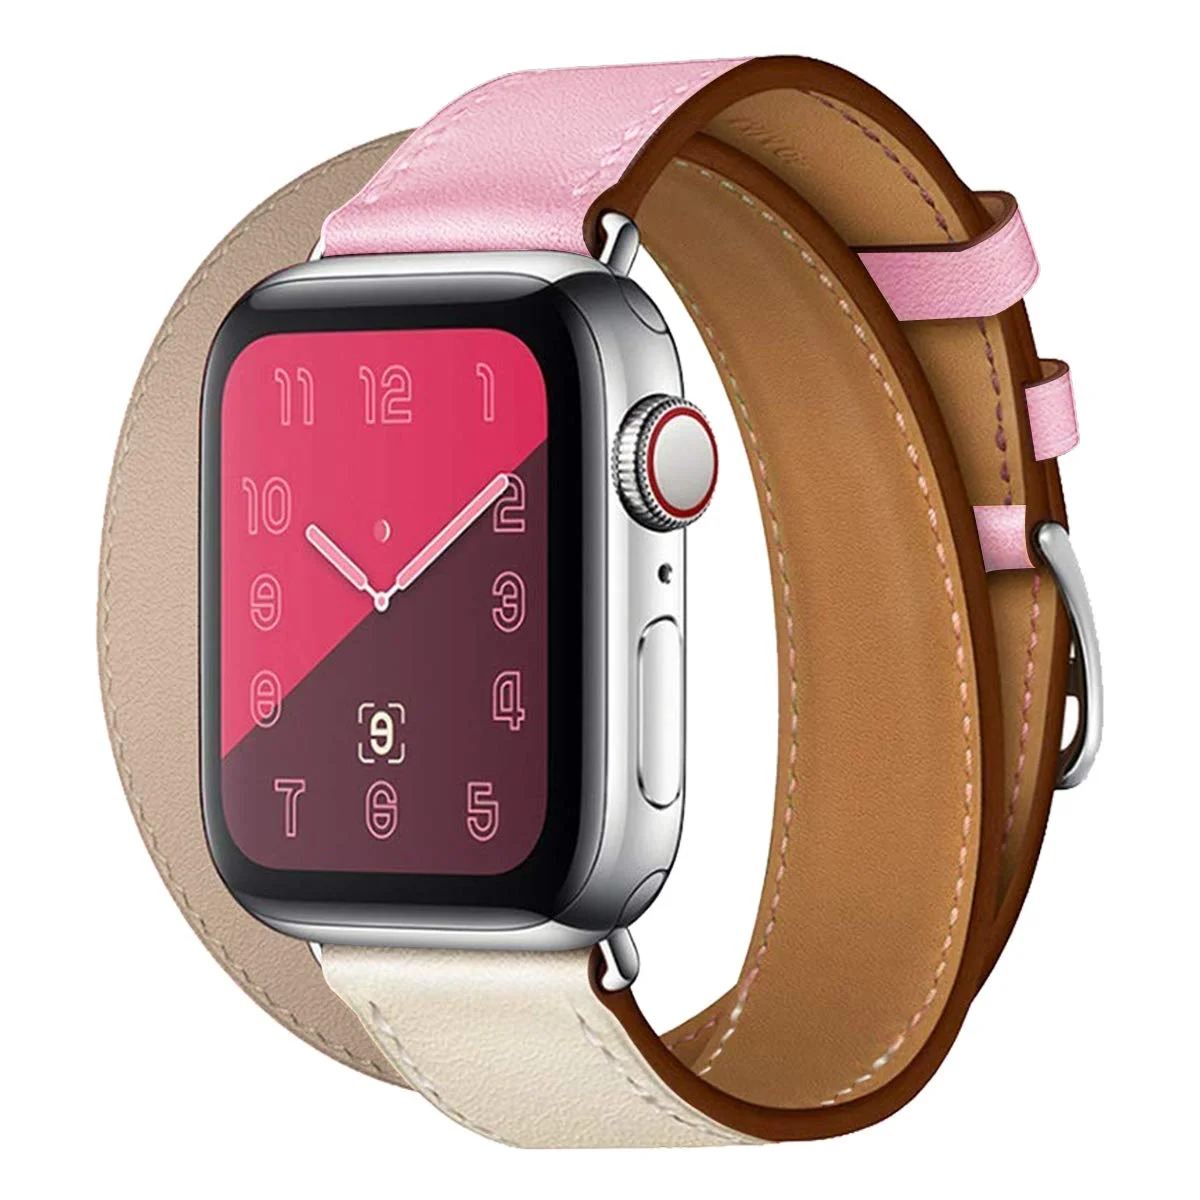 Řemínek iMore Double Tour Apple Watch Series 3/2/1 (42mm) - Béžový/Růžový